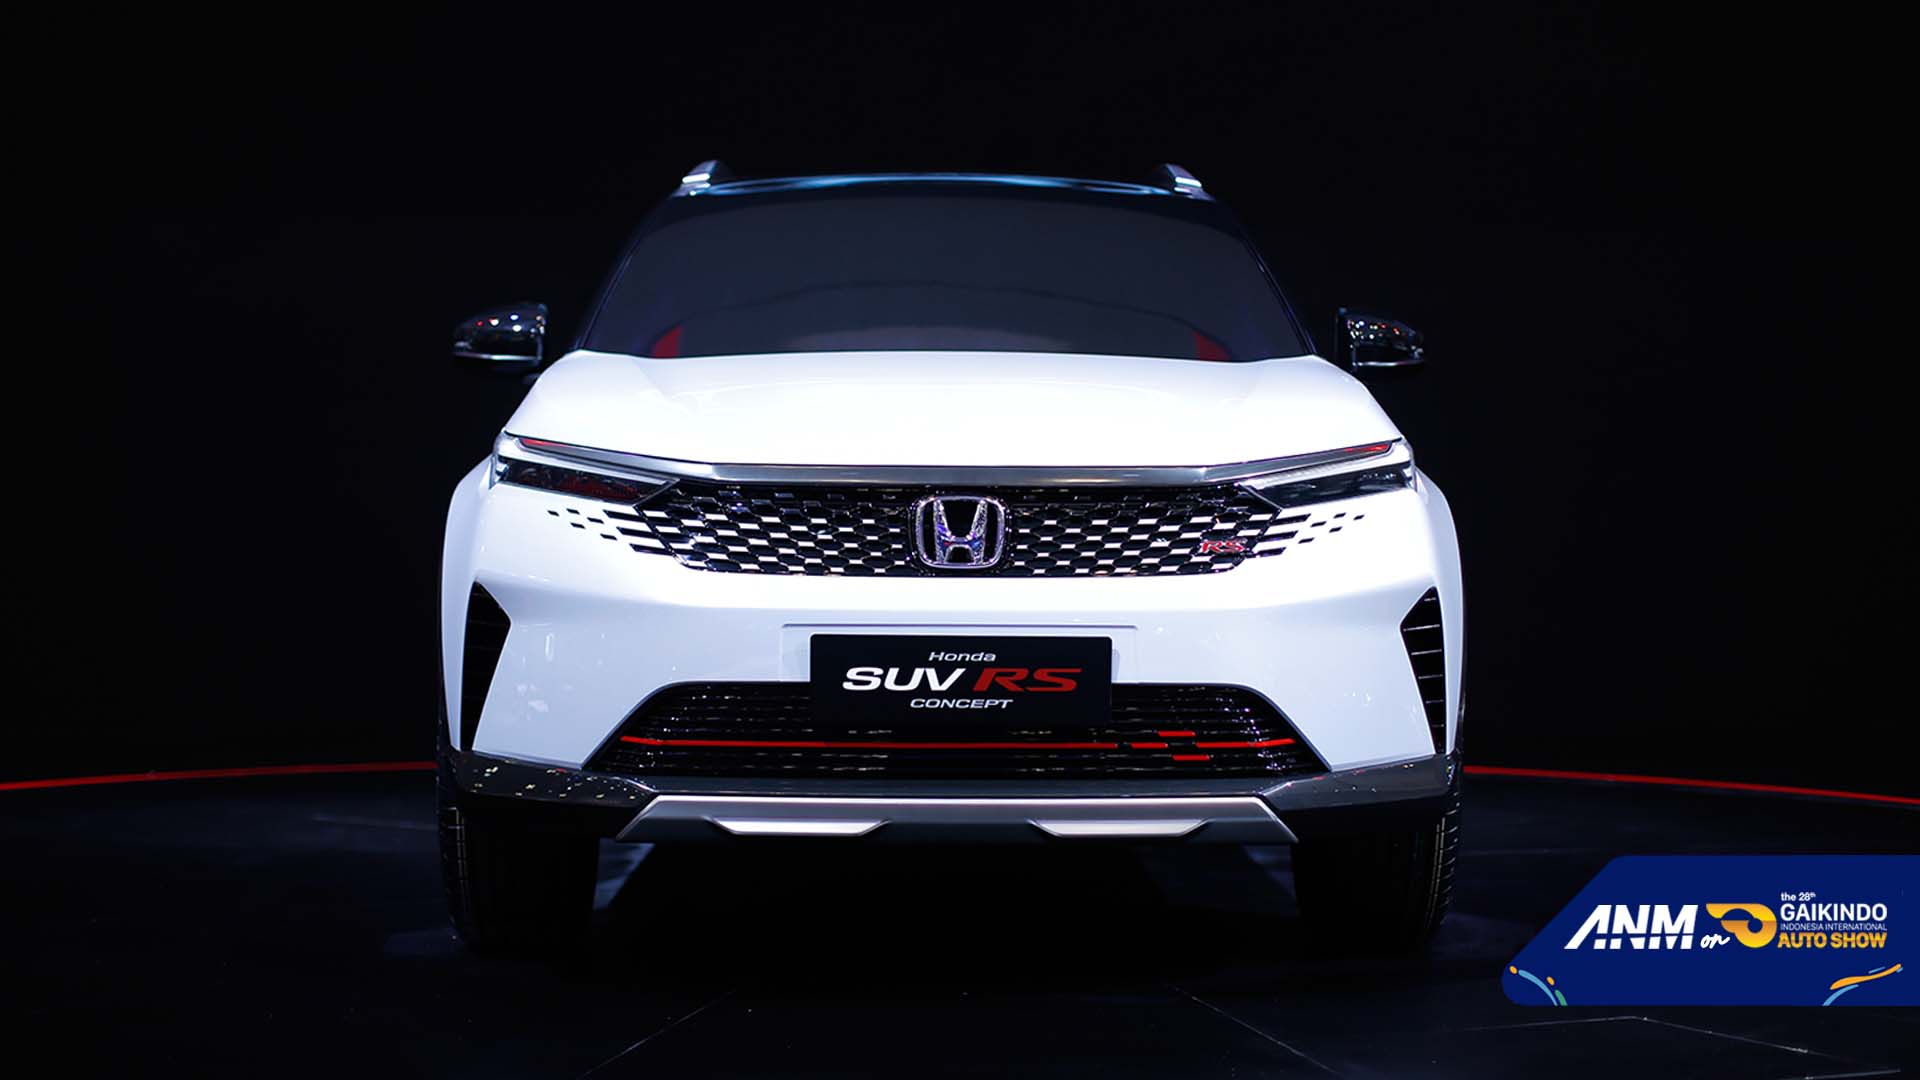 Berita, Launching Honda SUV RS Concept: GIIAS 2021 : Foto Lengkap Honda SUV RS Concept, Emang Ganteng!